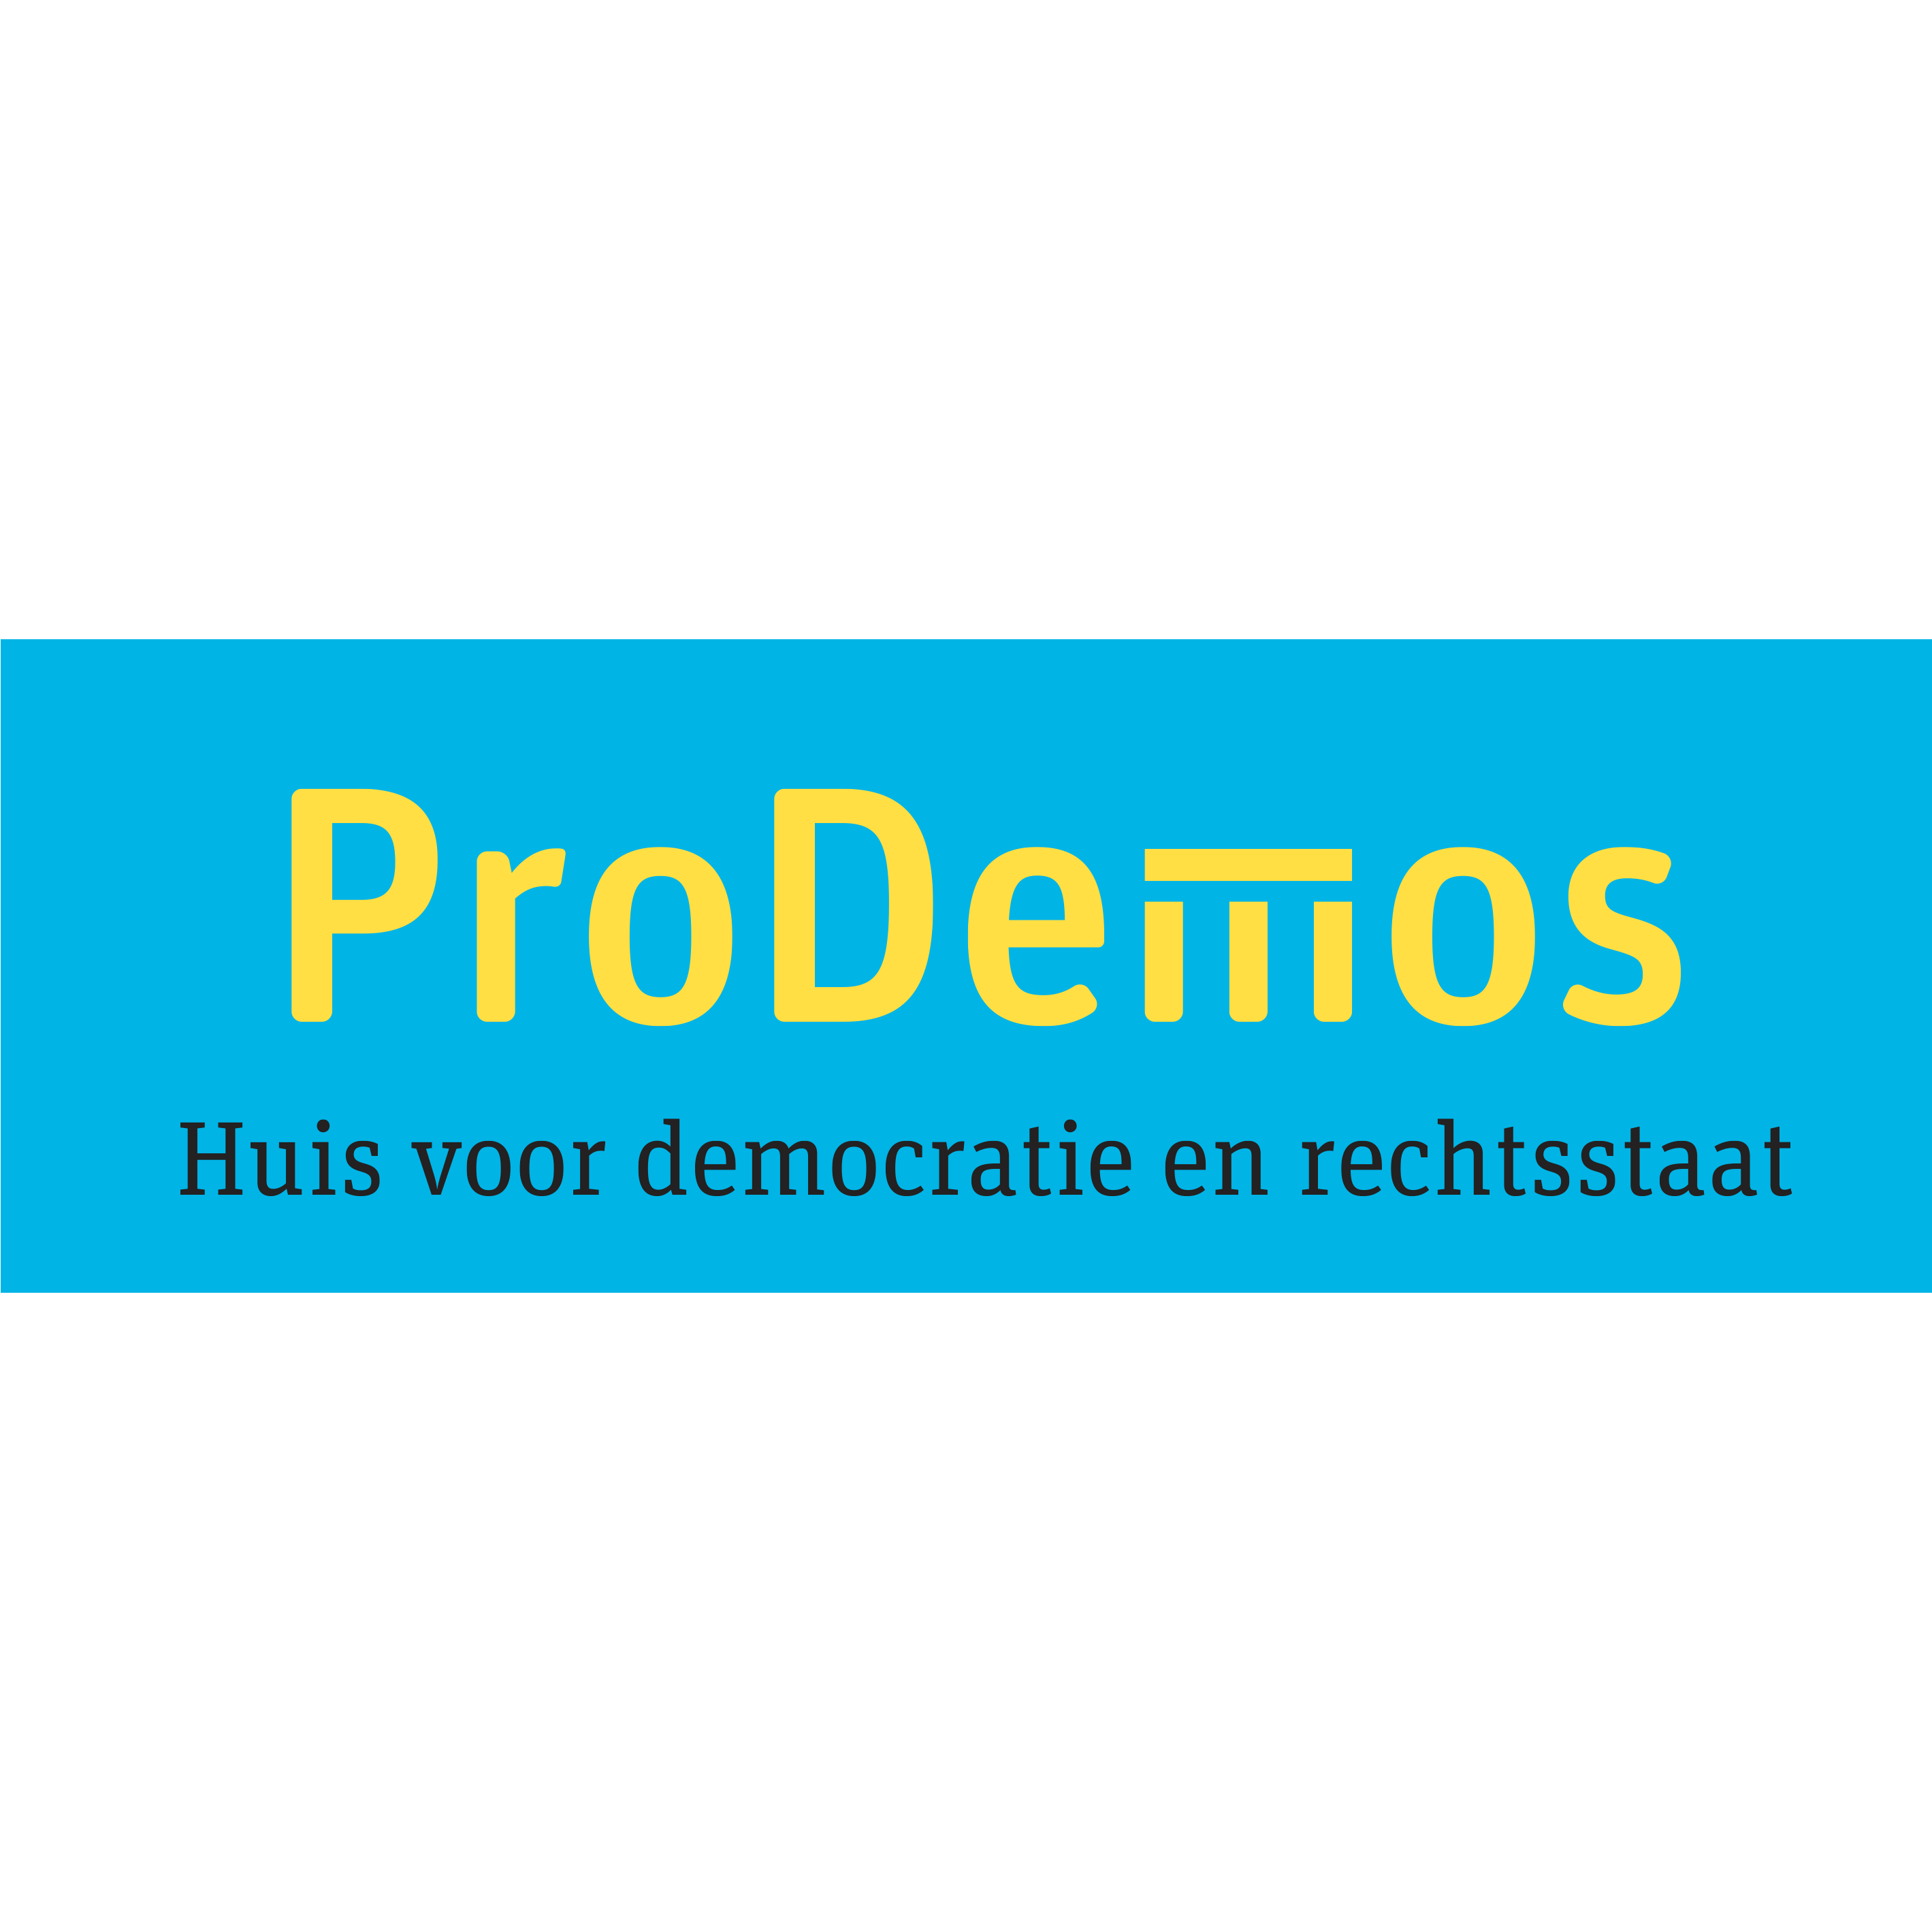 ProDemos Huis voor Democratie en Rechtsstaat - Association Or Organization - 's-Gravenhage - 070 757 0200 Netherlands | ShowMeLocal.com